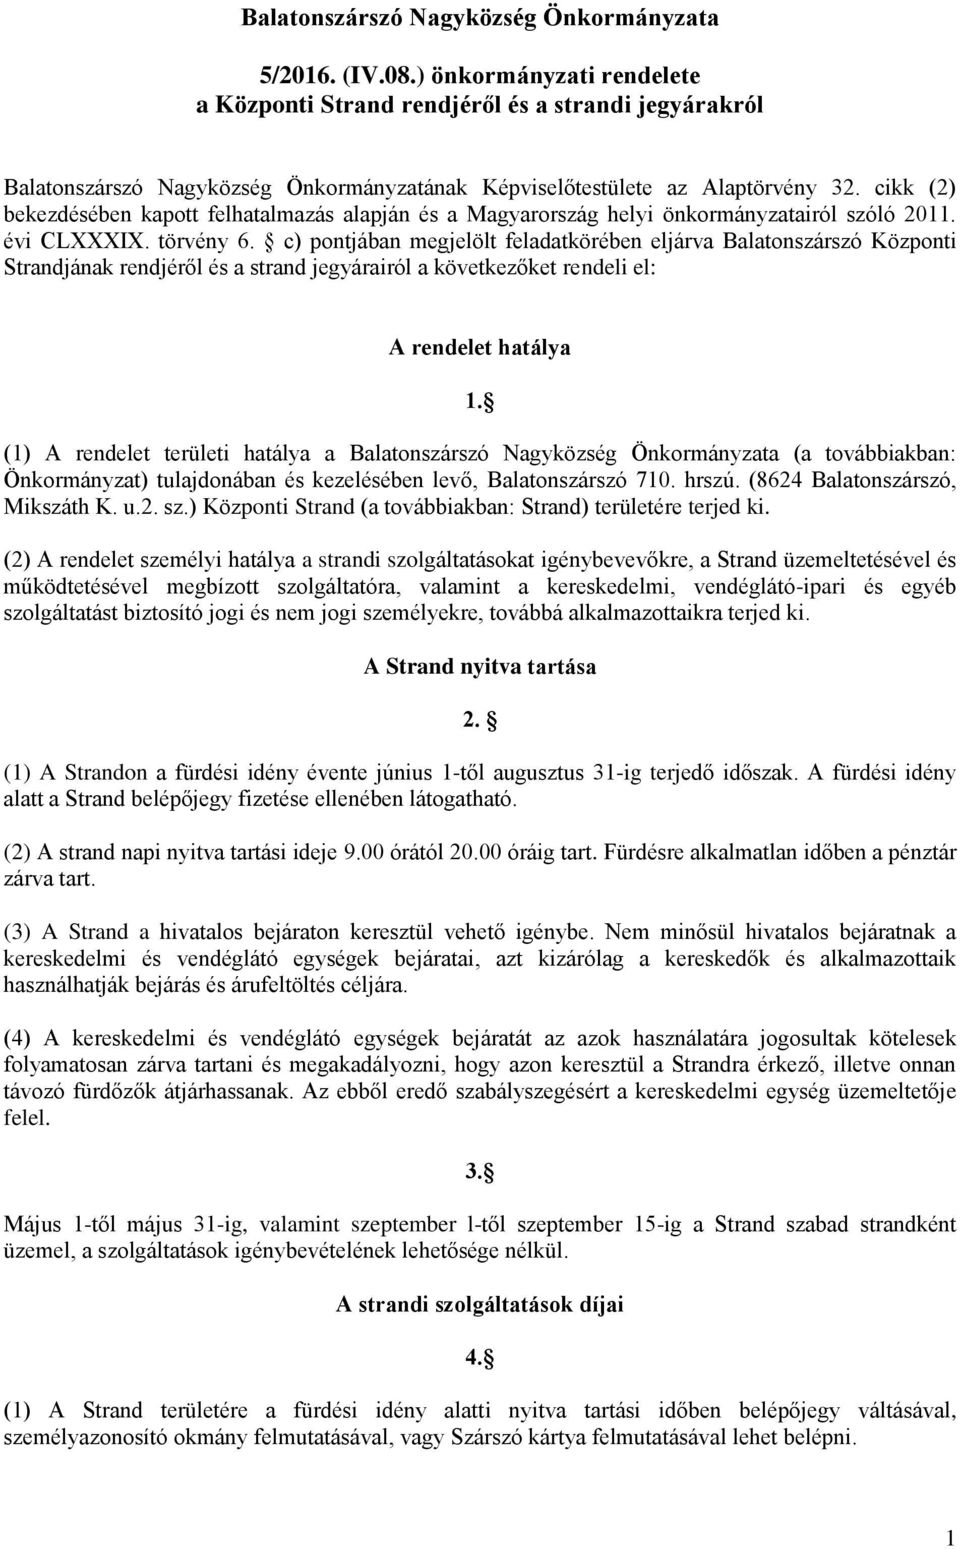 cikk (2) bekezdésében kapott felhatalmazás alapján és a Magyarország helyi önkormányzatairól szóló 2011. évi CLXXXIX. törvény 6.